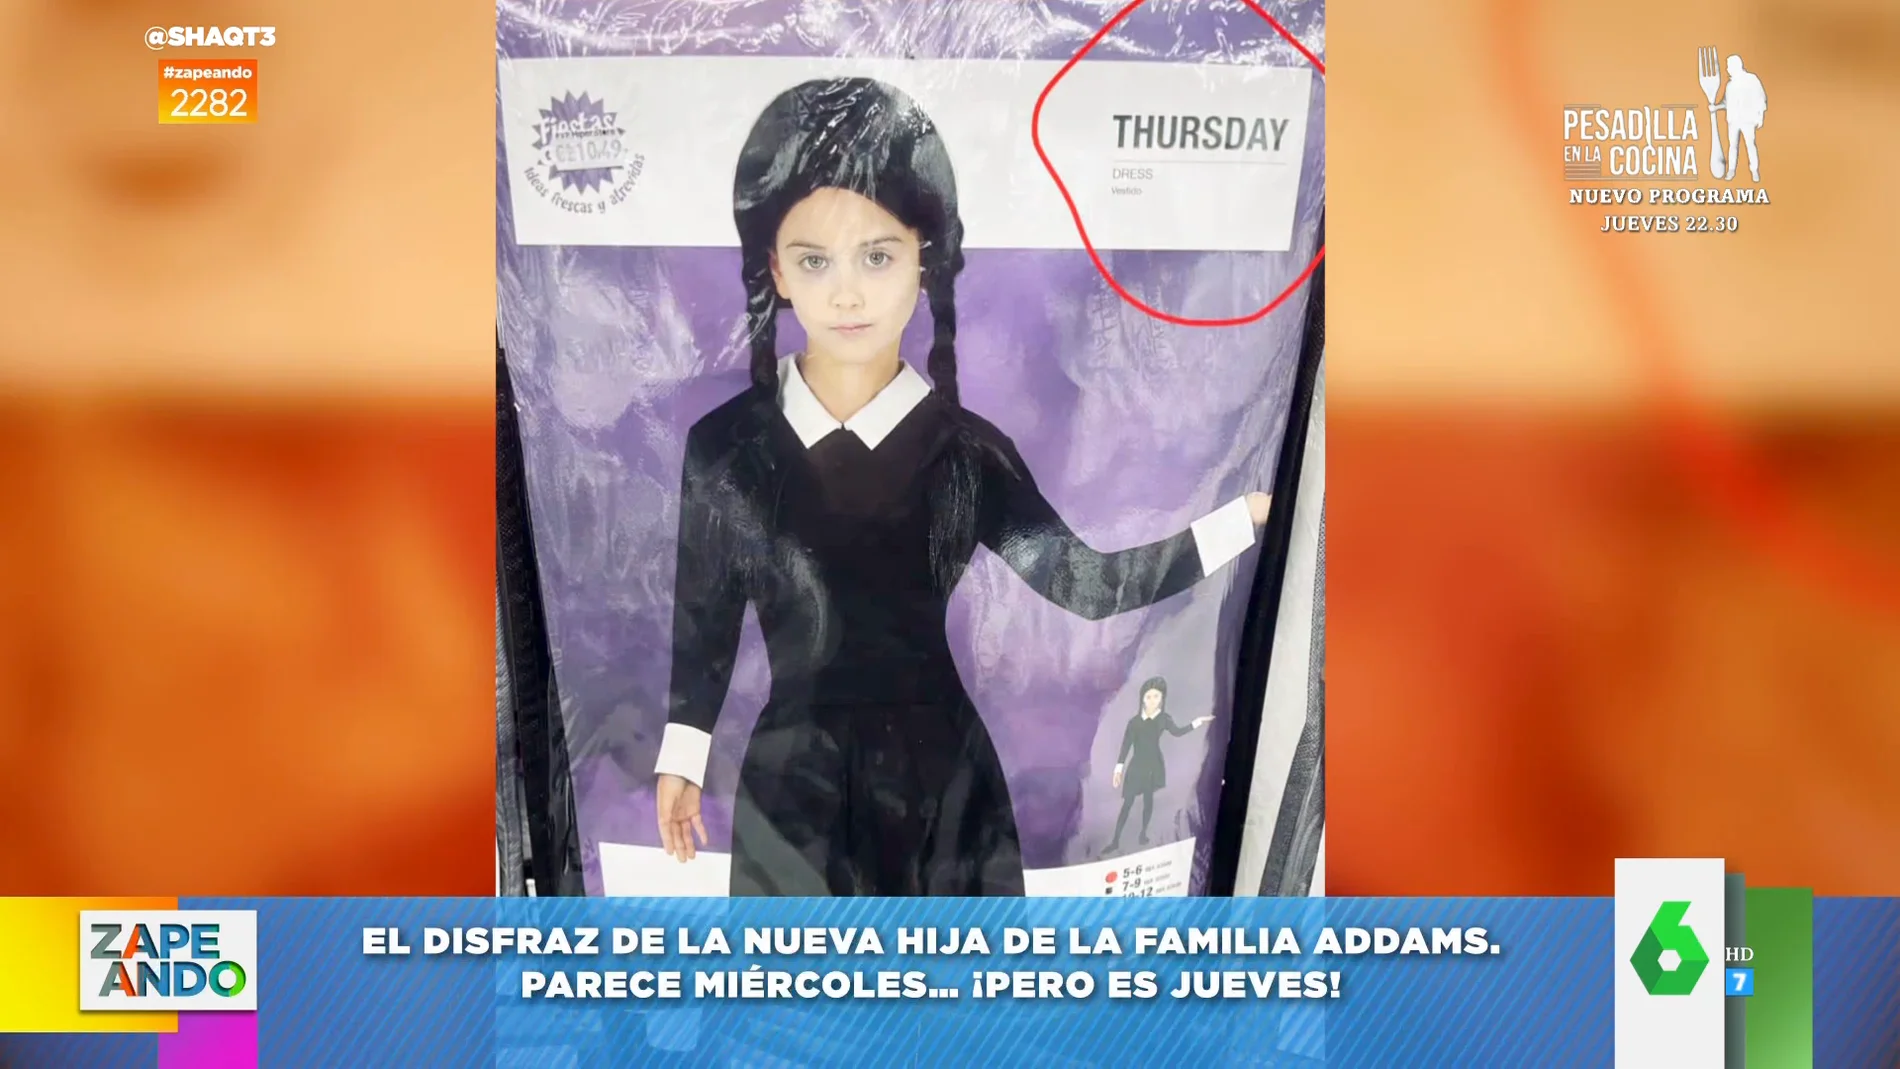 El surrealista disfraz de Miércoles Addams: "Los padres no son Gómez y Morticia sino Pérez y Patricia"